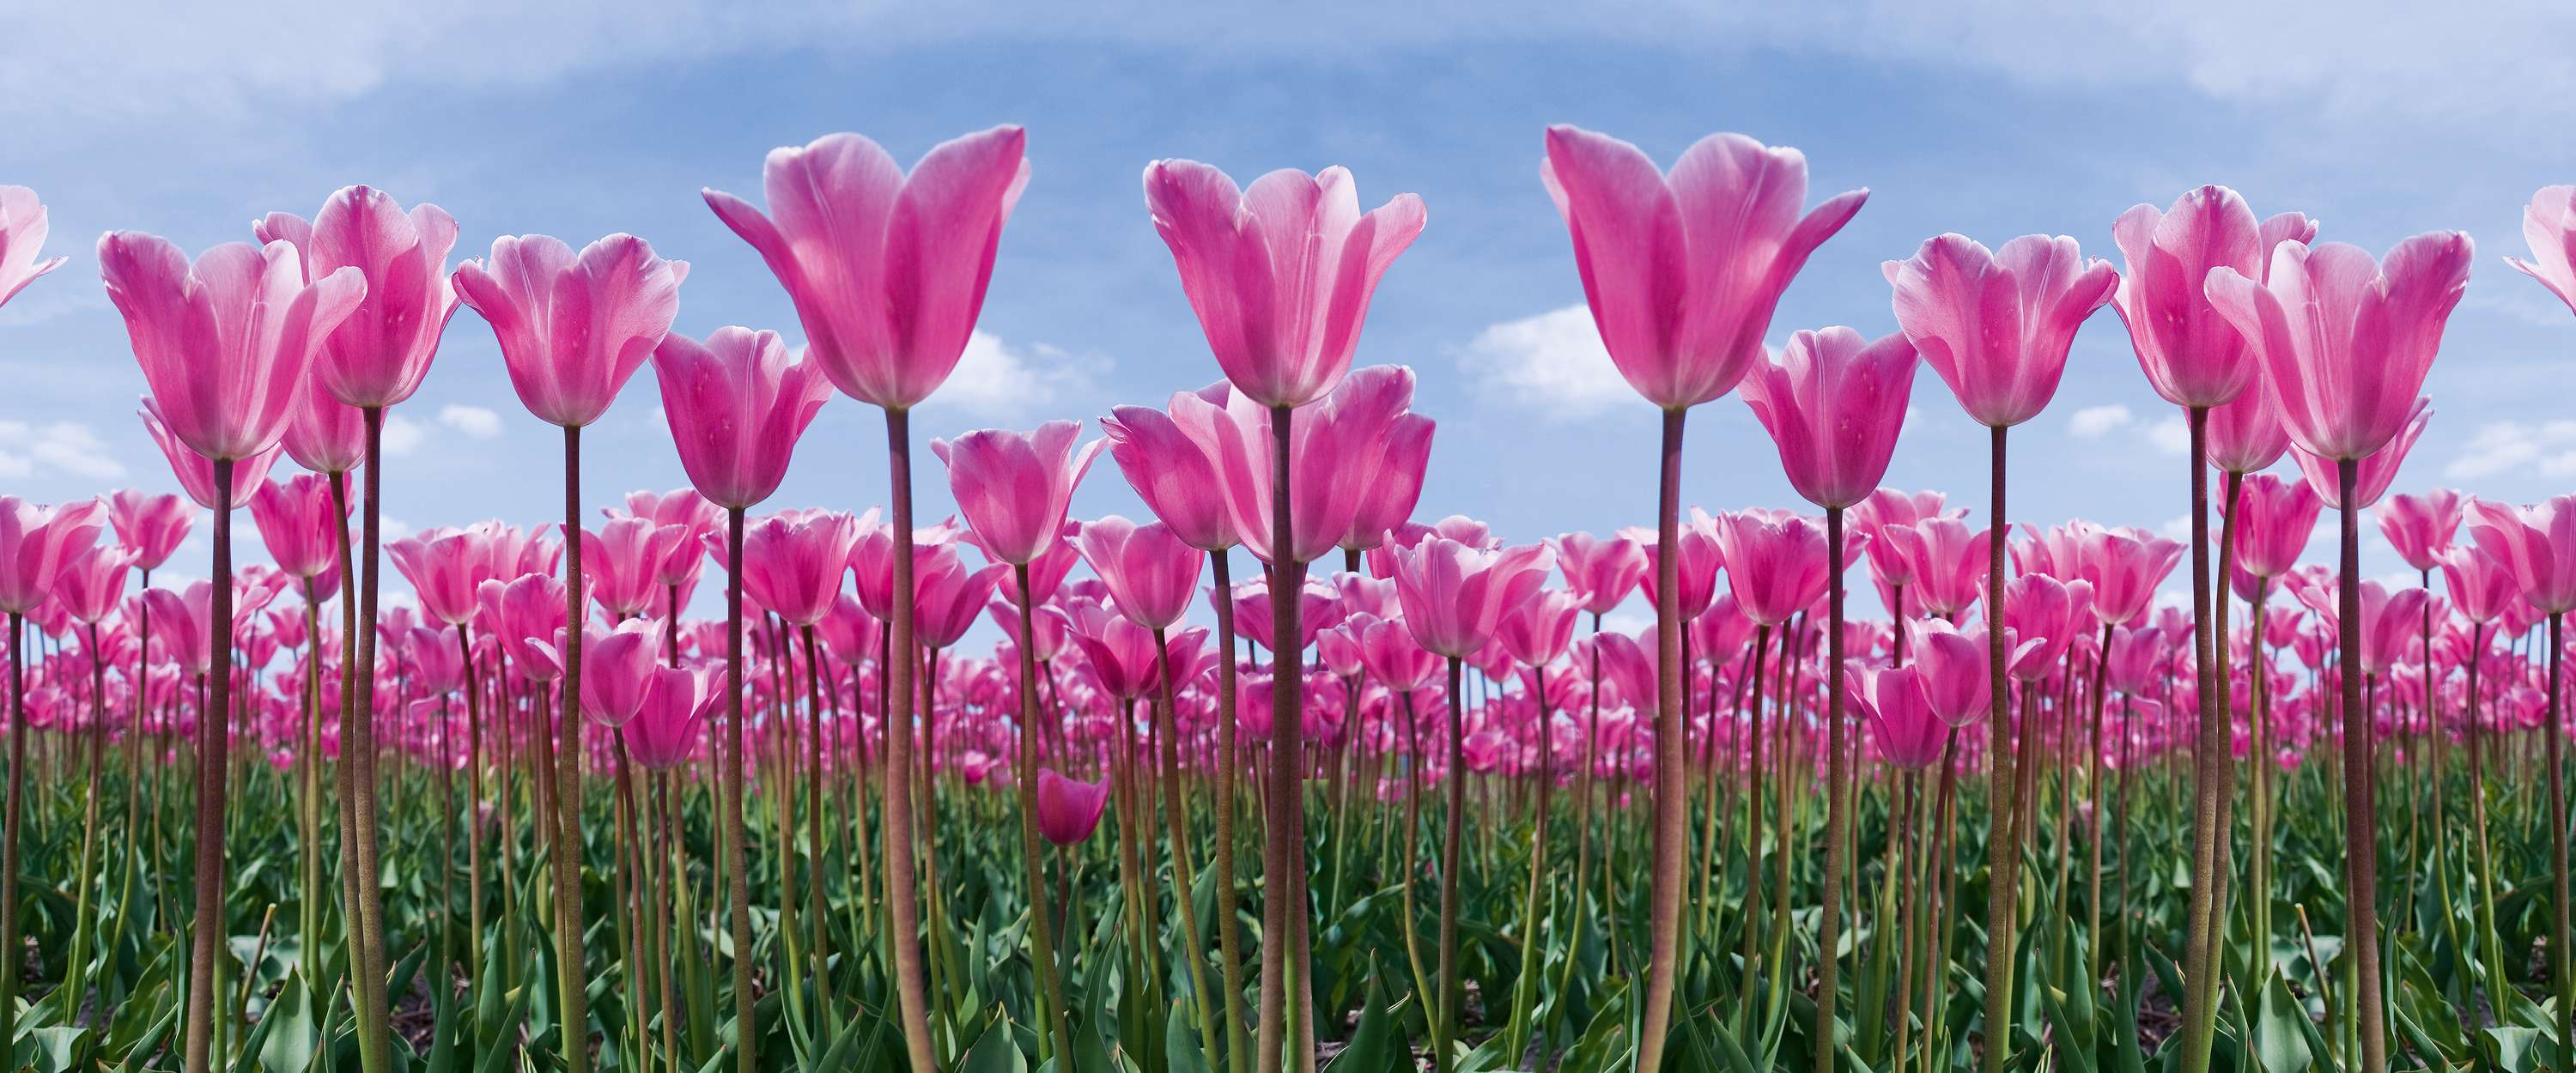             Tulpenfeld – Fototapete Blumen mit pinken Tulpen
        